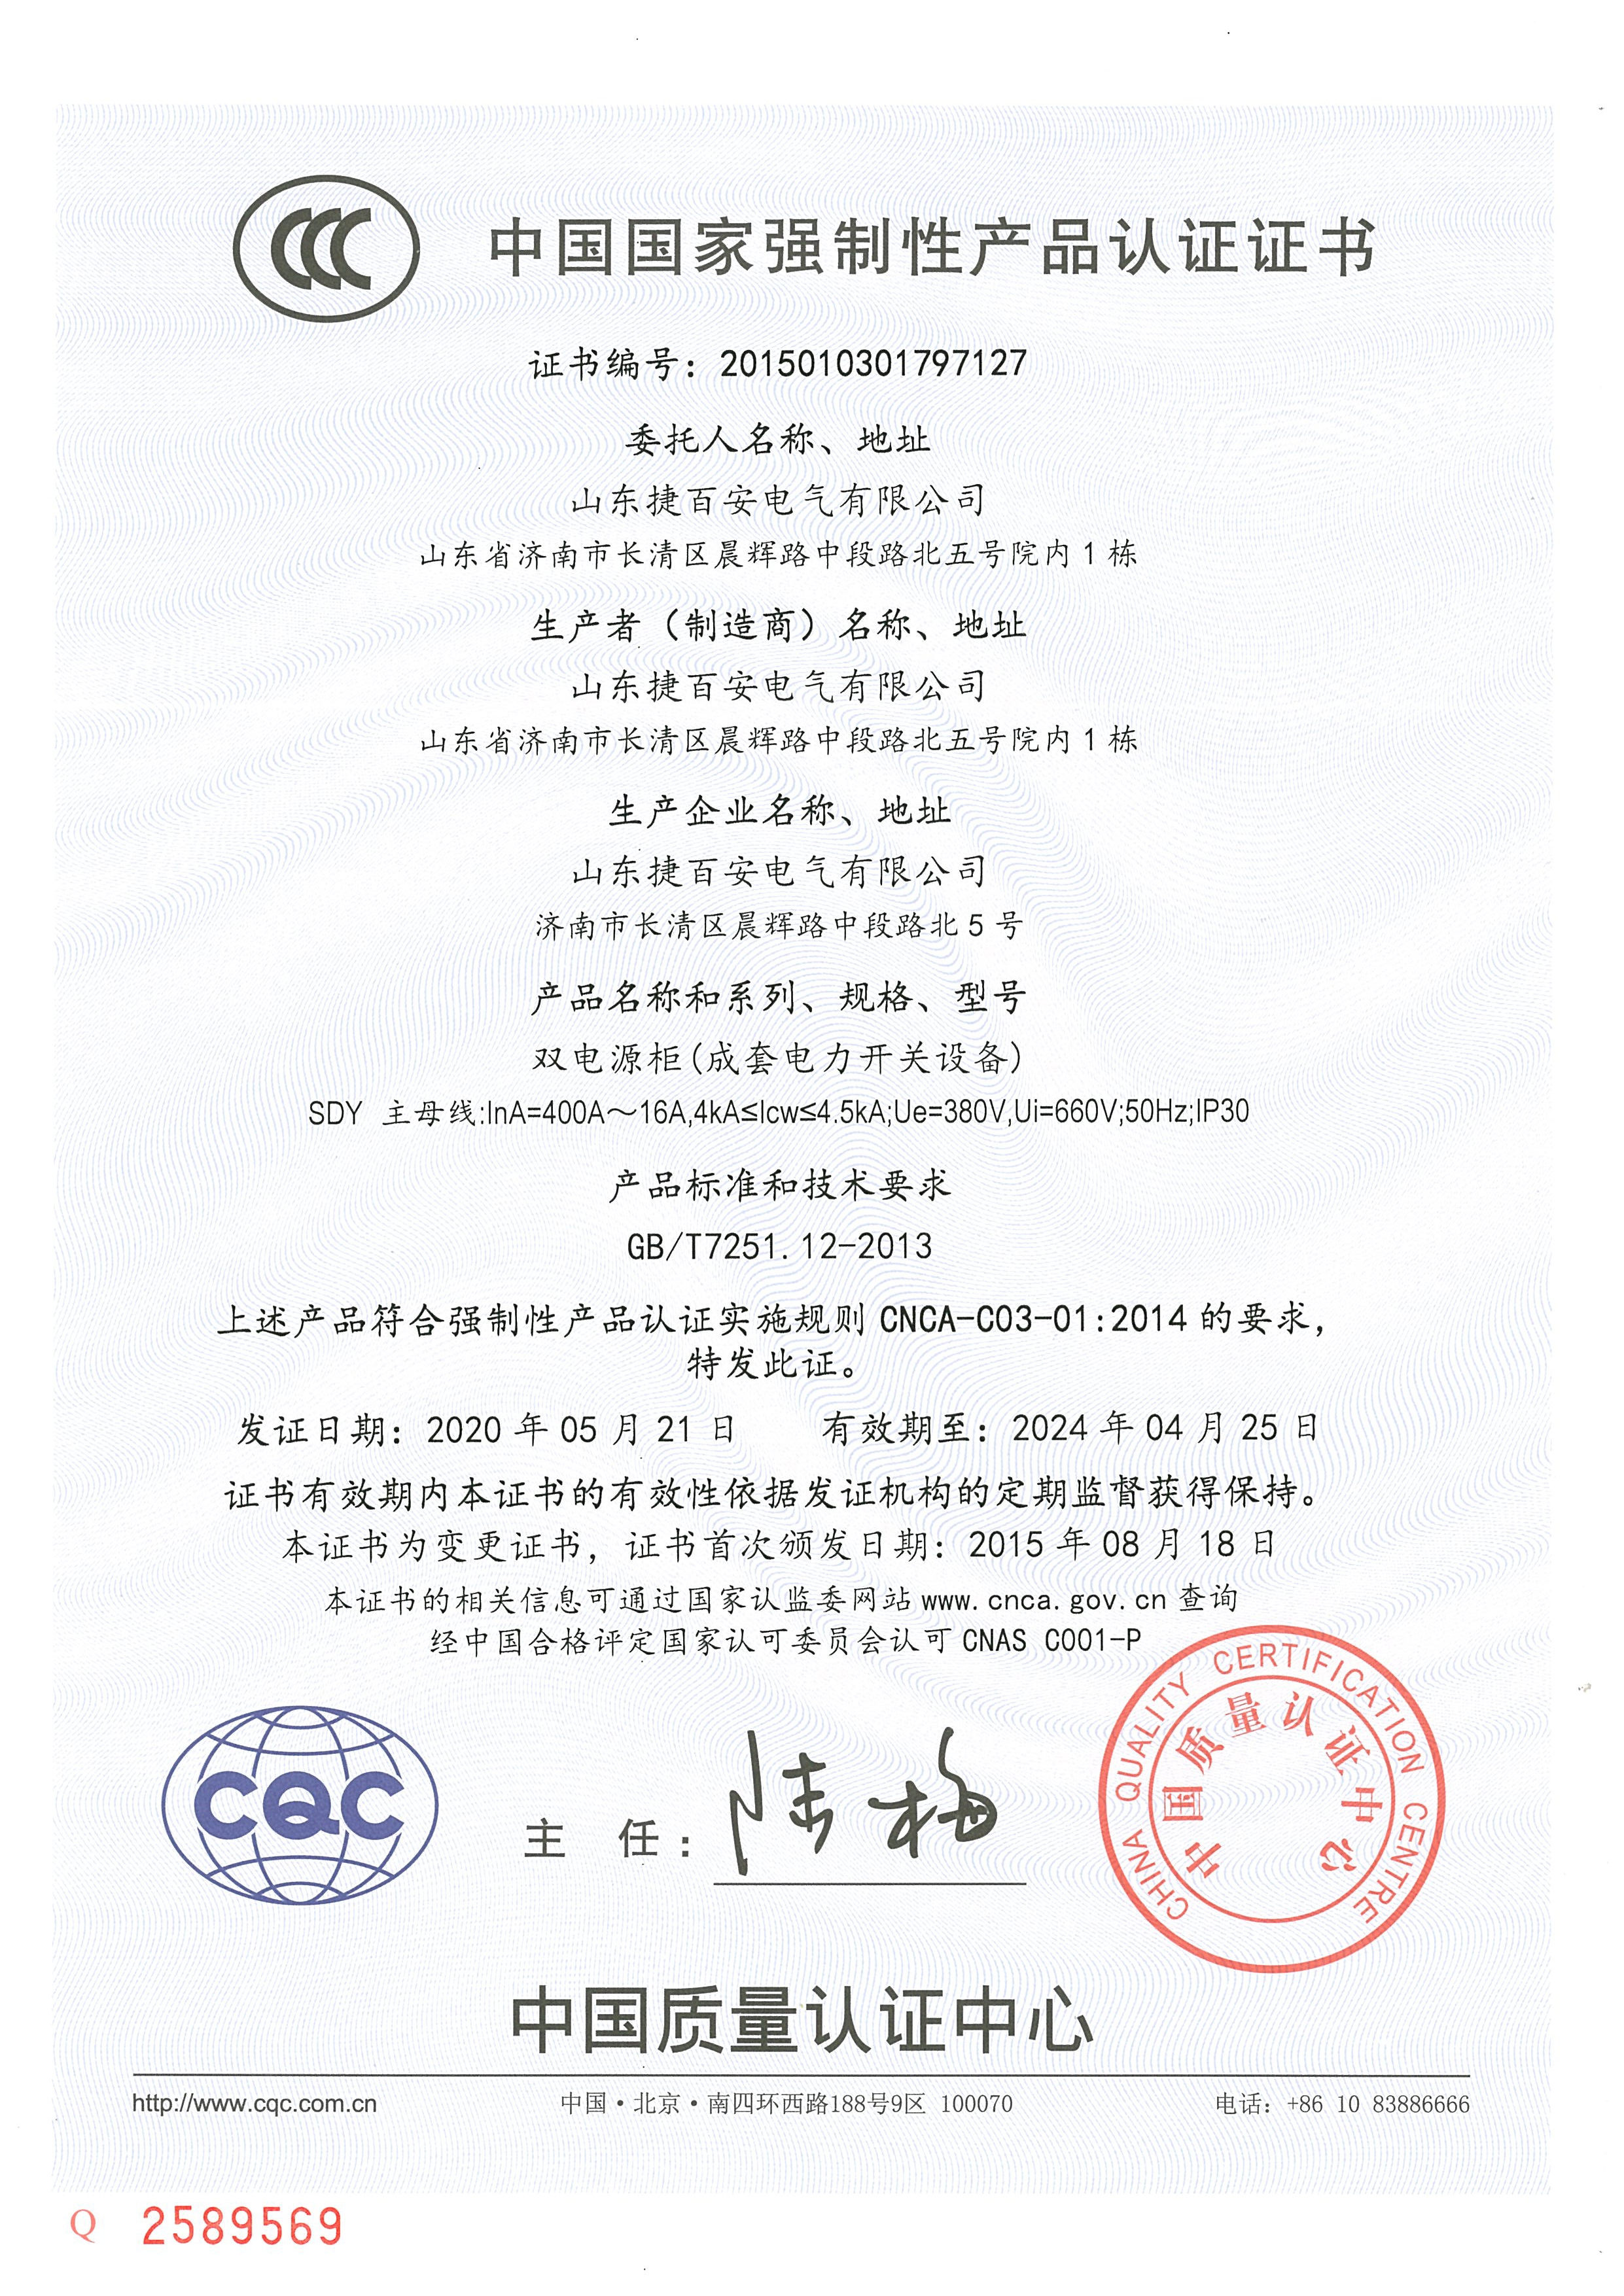 SDY系列CCC认证证书